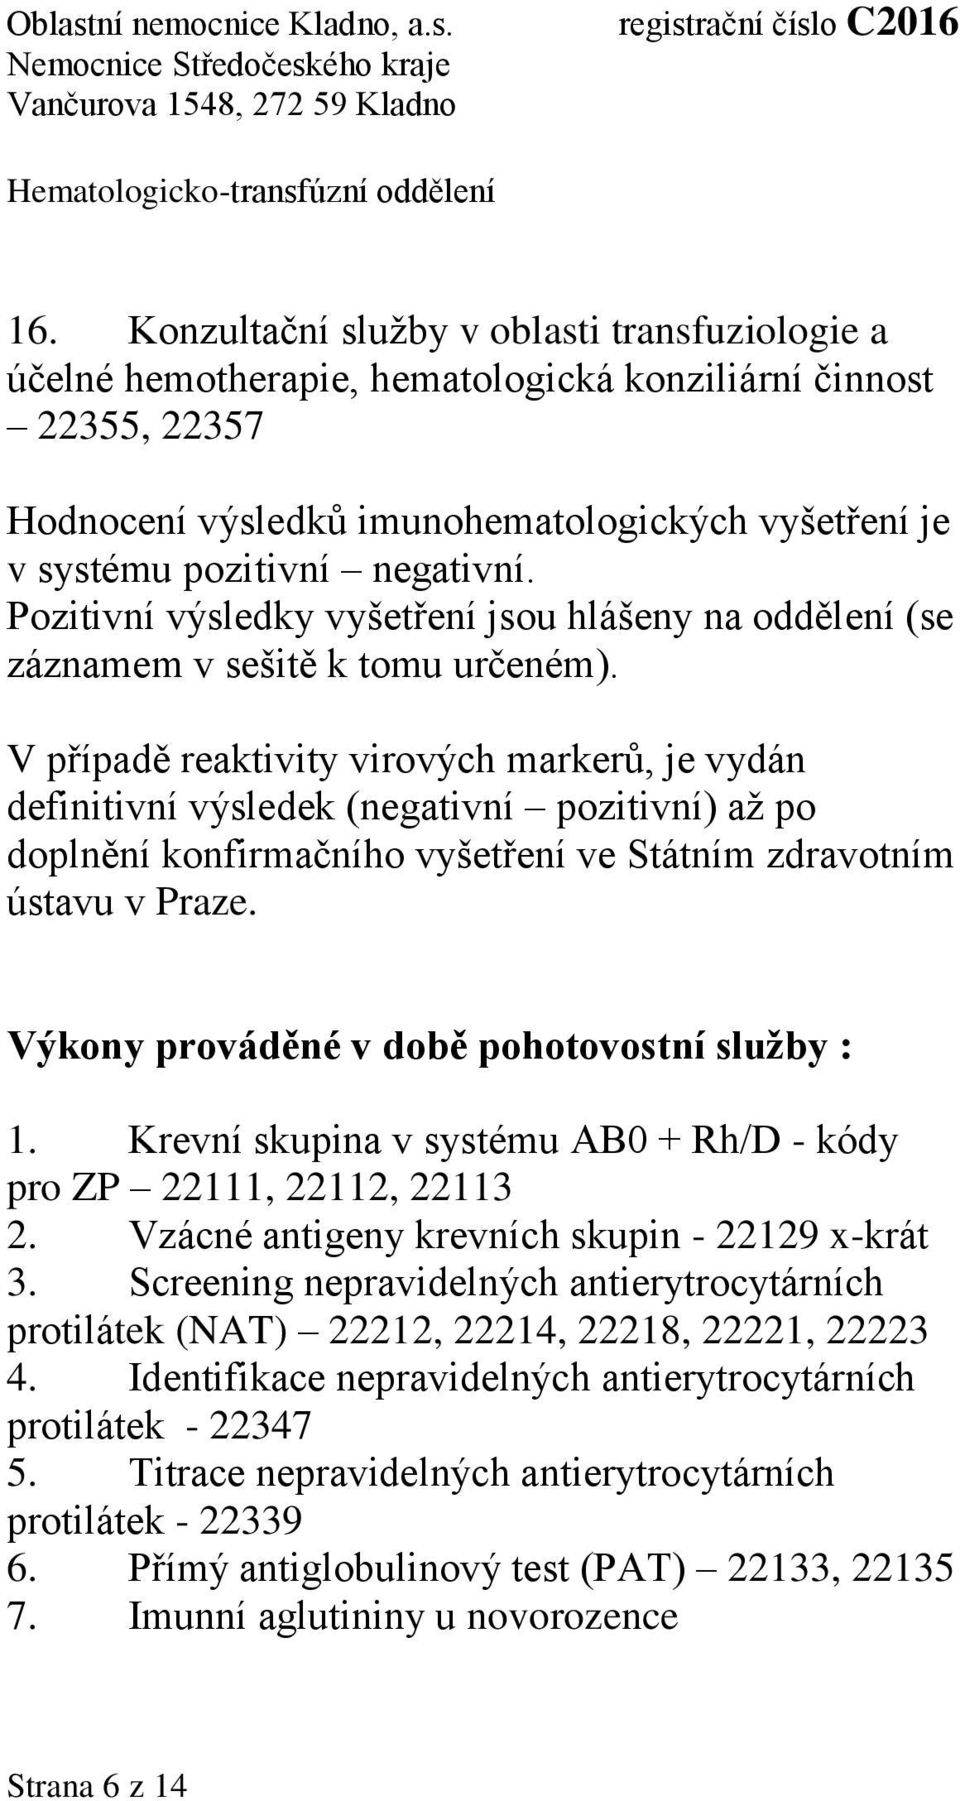 V případě reaktivity virových markerů, je vydán definitivní výsledek (negativní pozitivní) až po doplnění konfirmačního vyšetření ve Státním zdravotním ústavu v Praze.